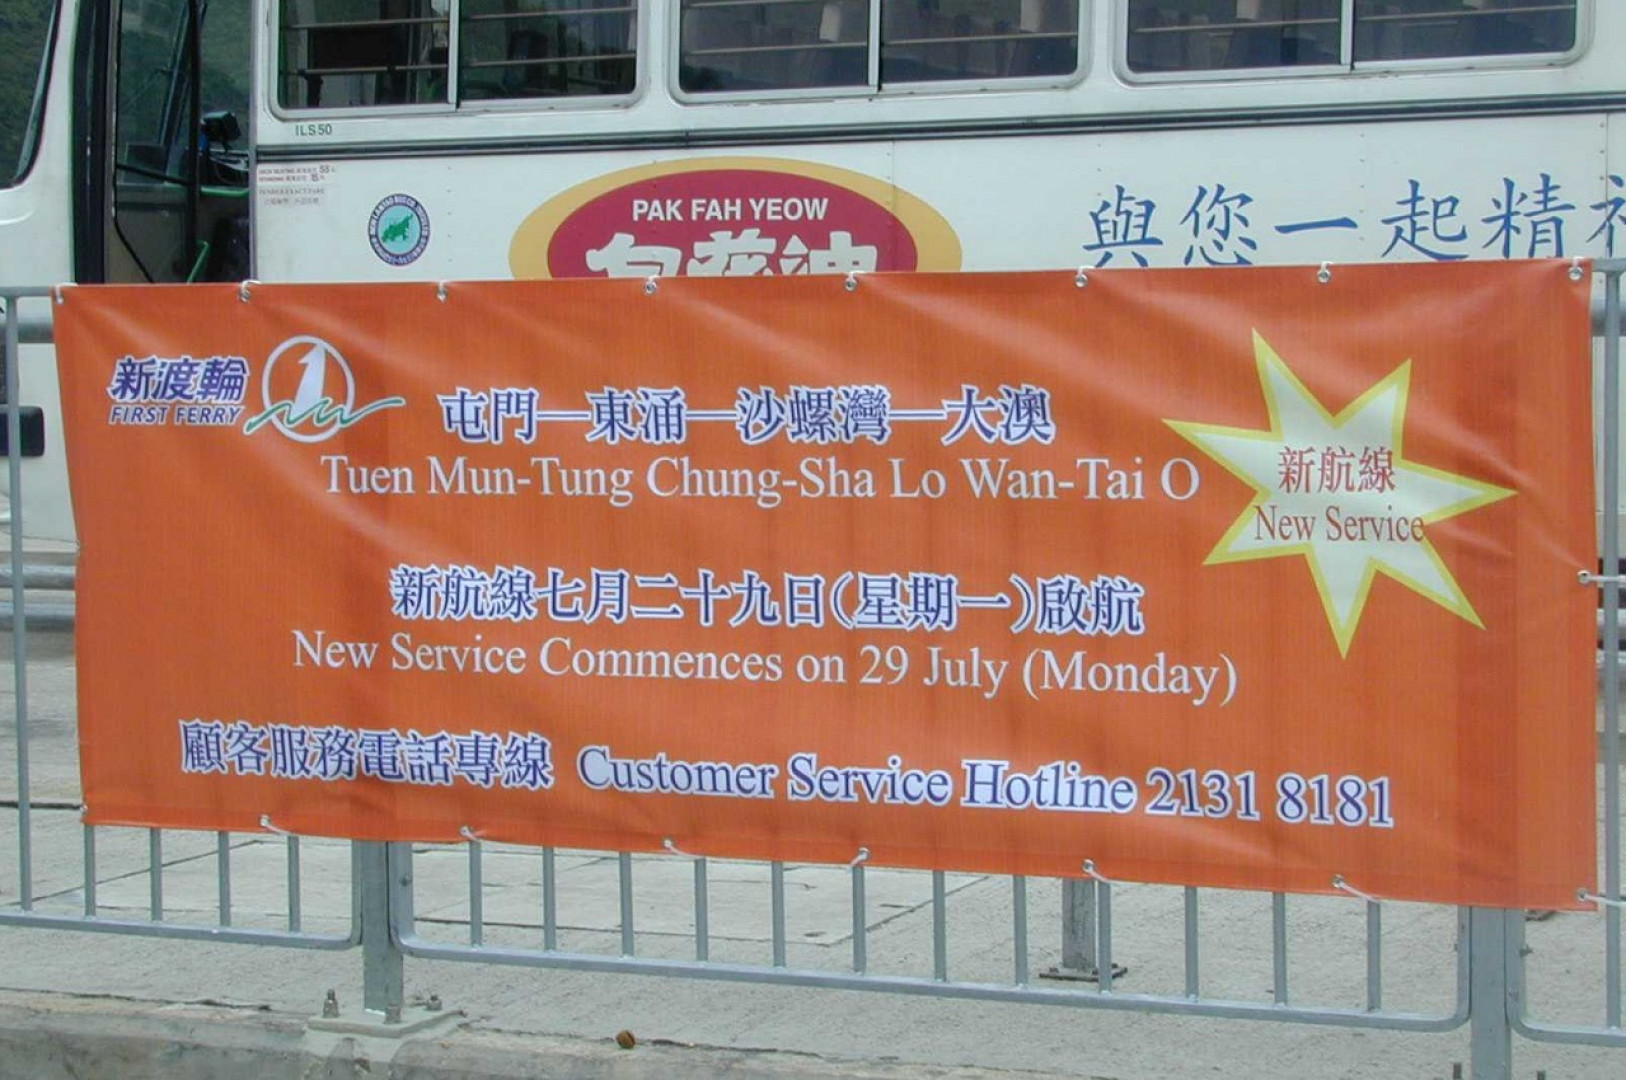 Launch of Tuen Mun - Tung Chung - Sha Lo Wan - Tai O ferry service